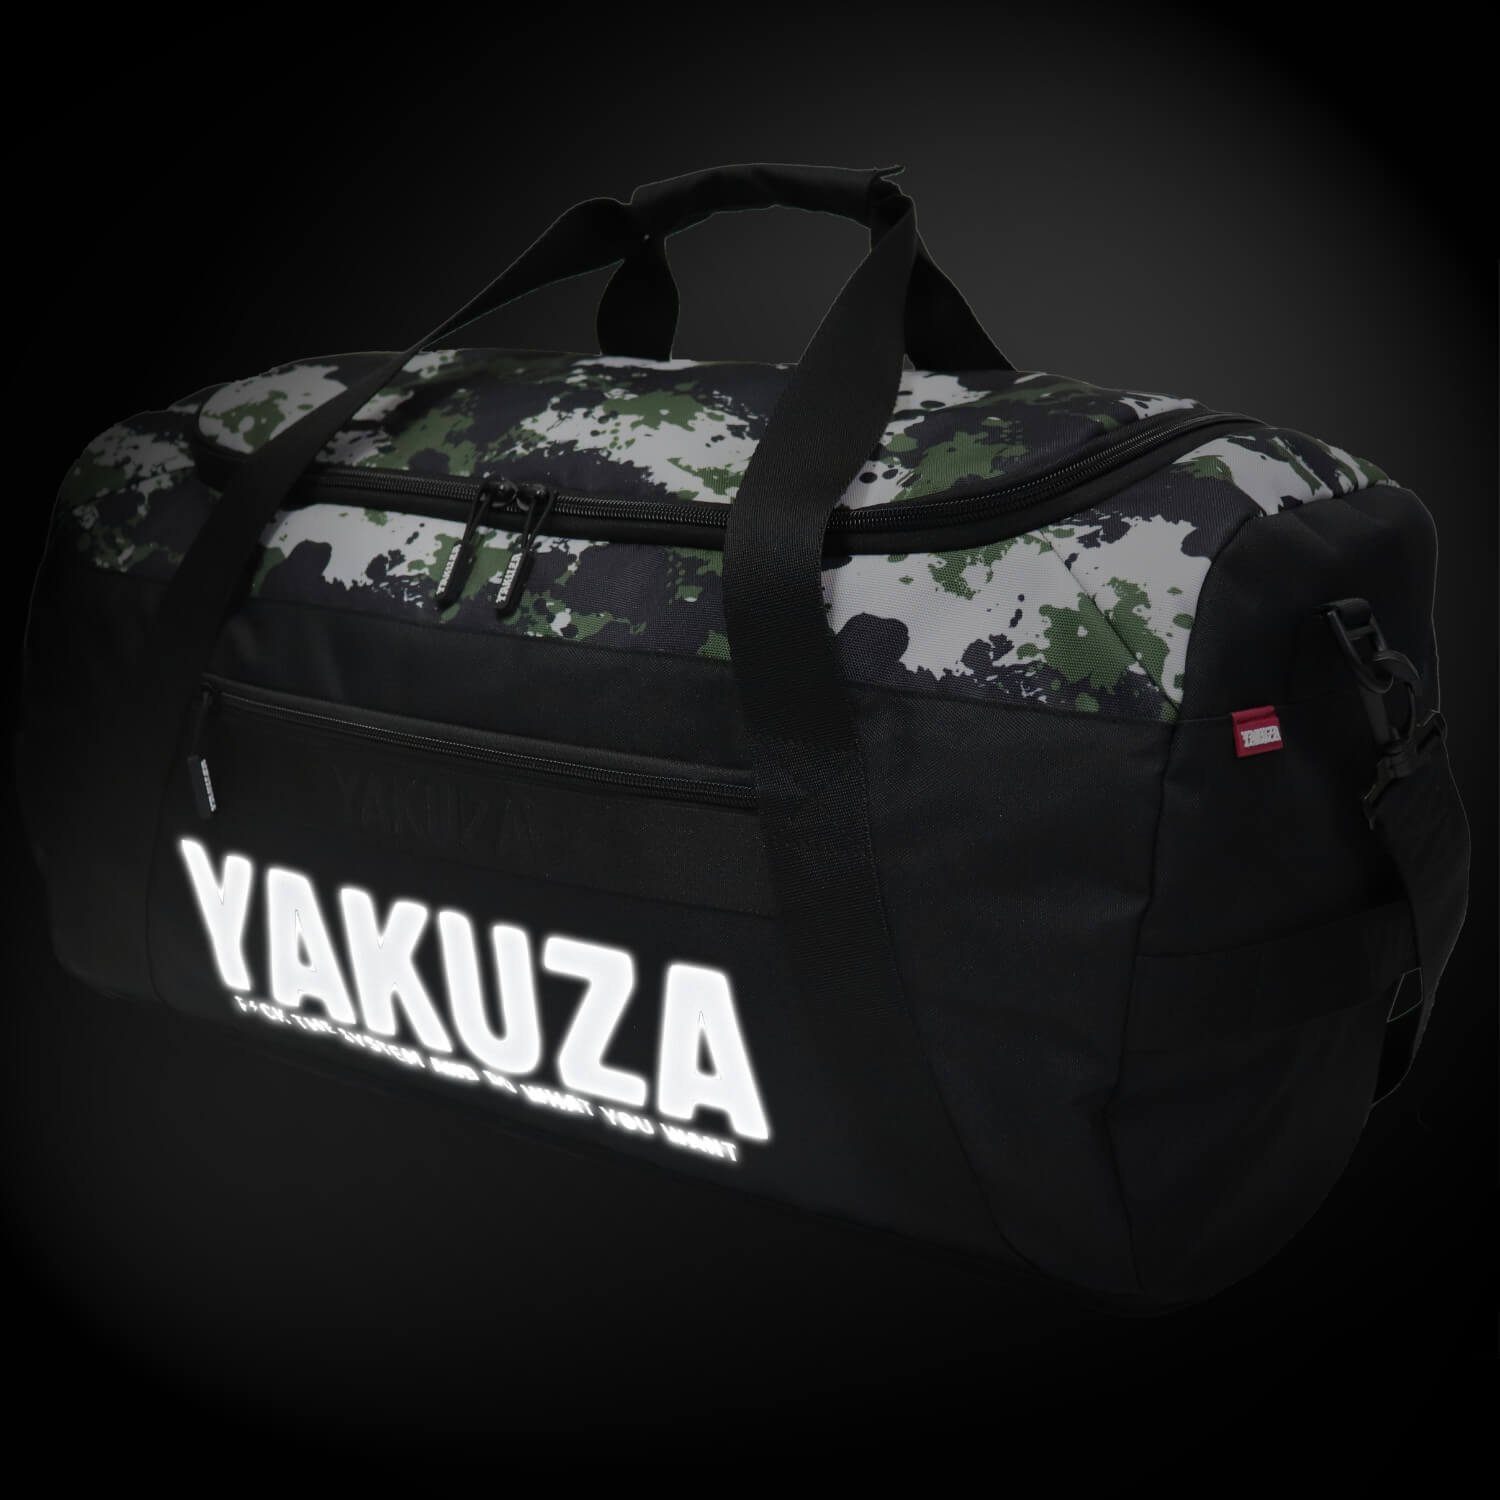 Hauptfach geräumigem Tweak YAKUZA mit schwarz/camouflage, Sporttasche Weekender YAKUZA Sporttasche